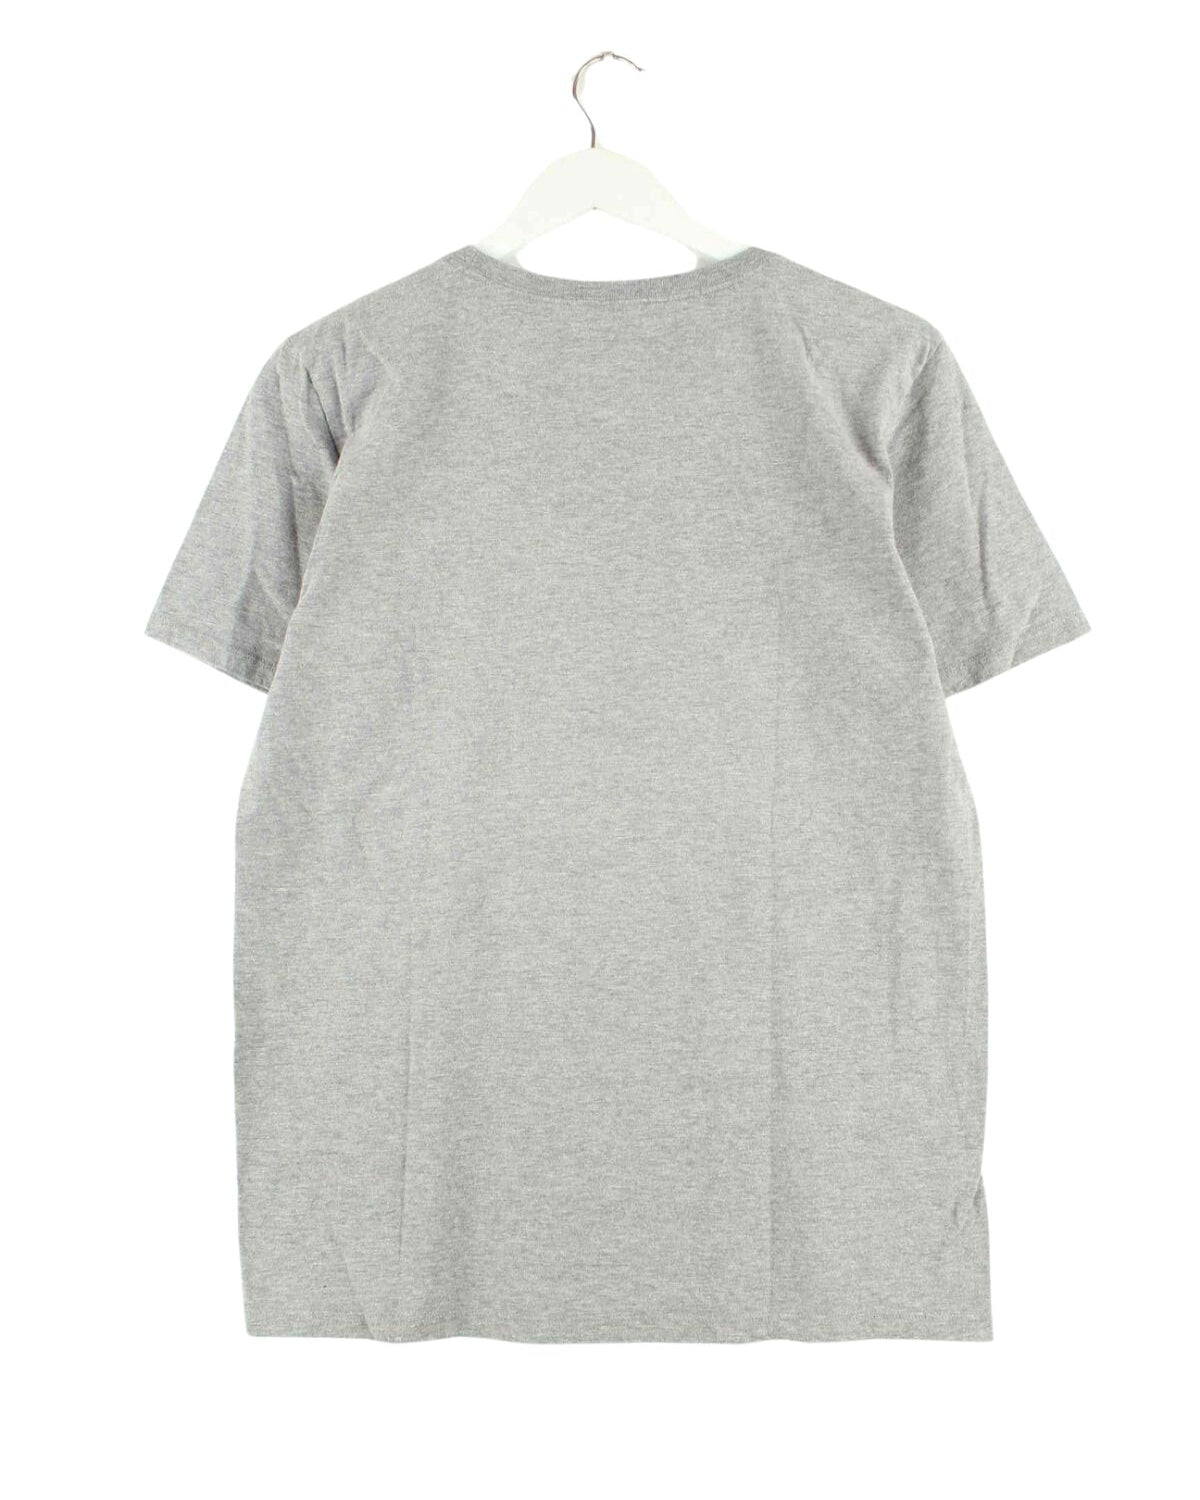 Nike Print T-Shirt Grau S (back image)